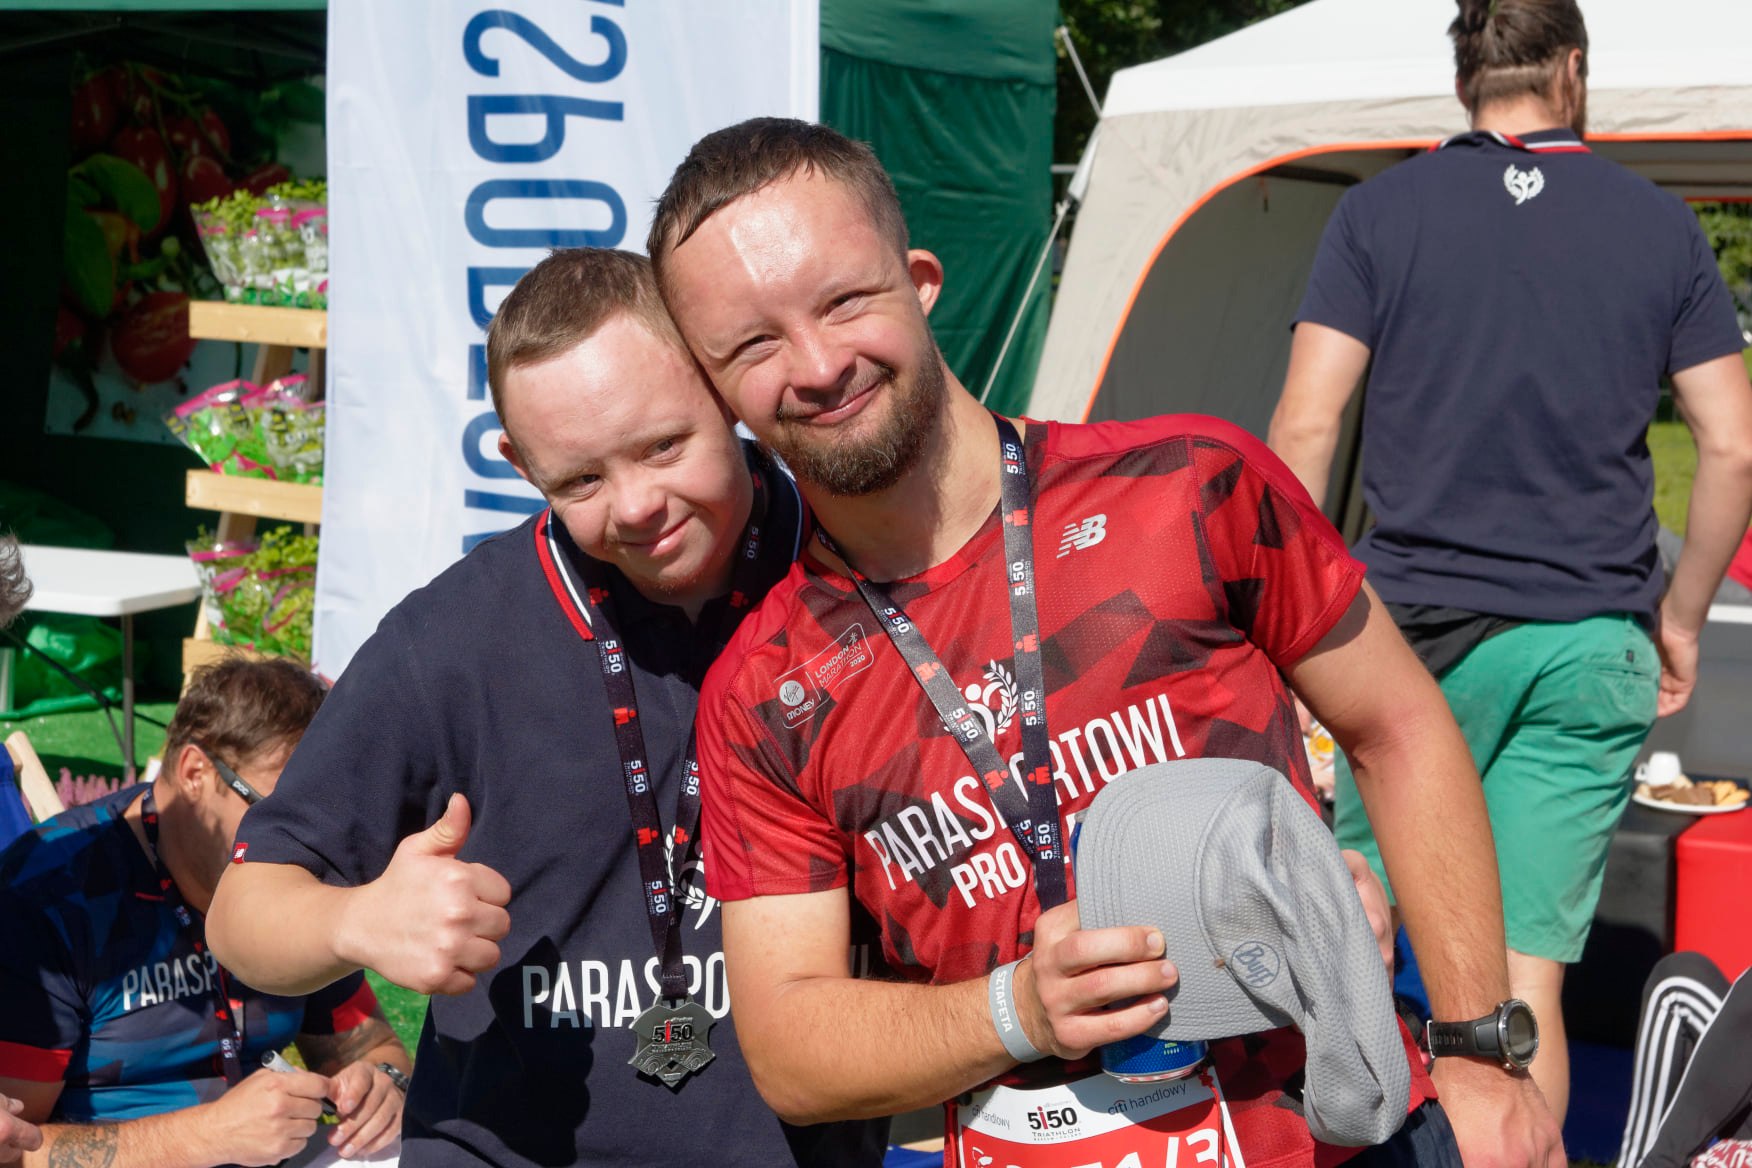 Na zdjęciu znajduje się dwóch uśmiechniętych mężczyzn z zespołem Downa w sportowych koszulkach. Jeden z nich unosi kciuk w górę.